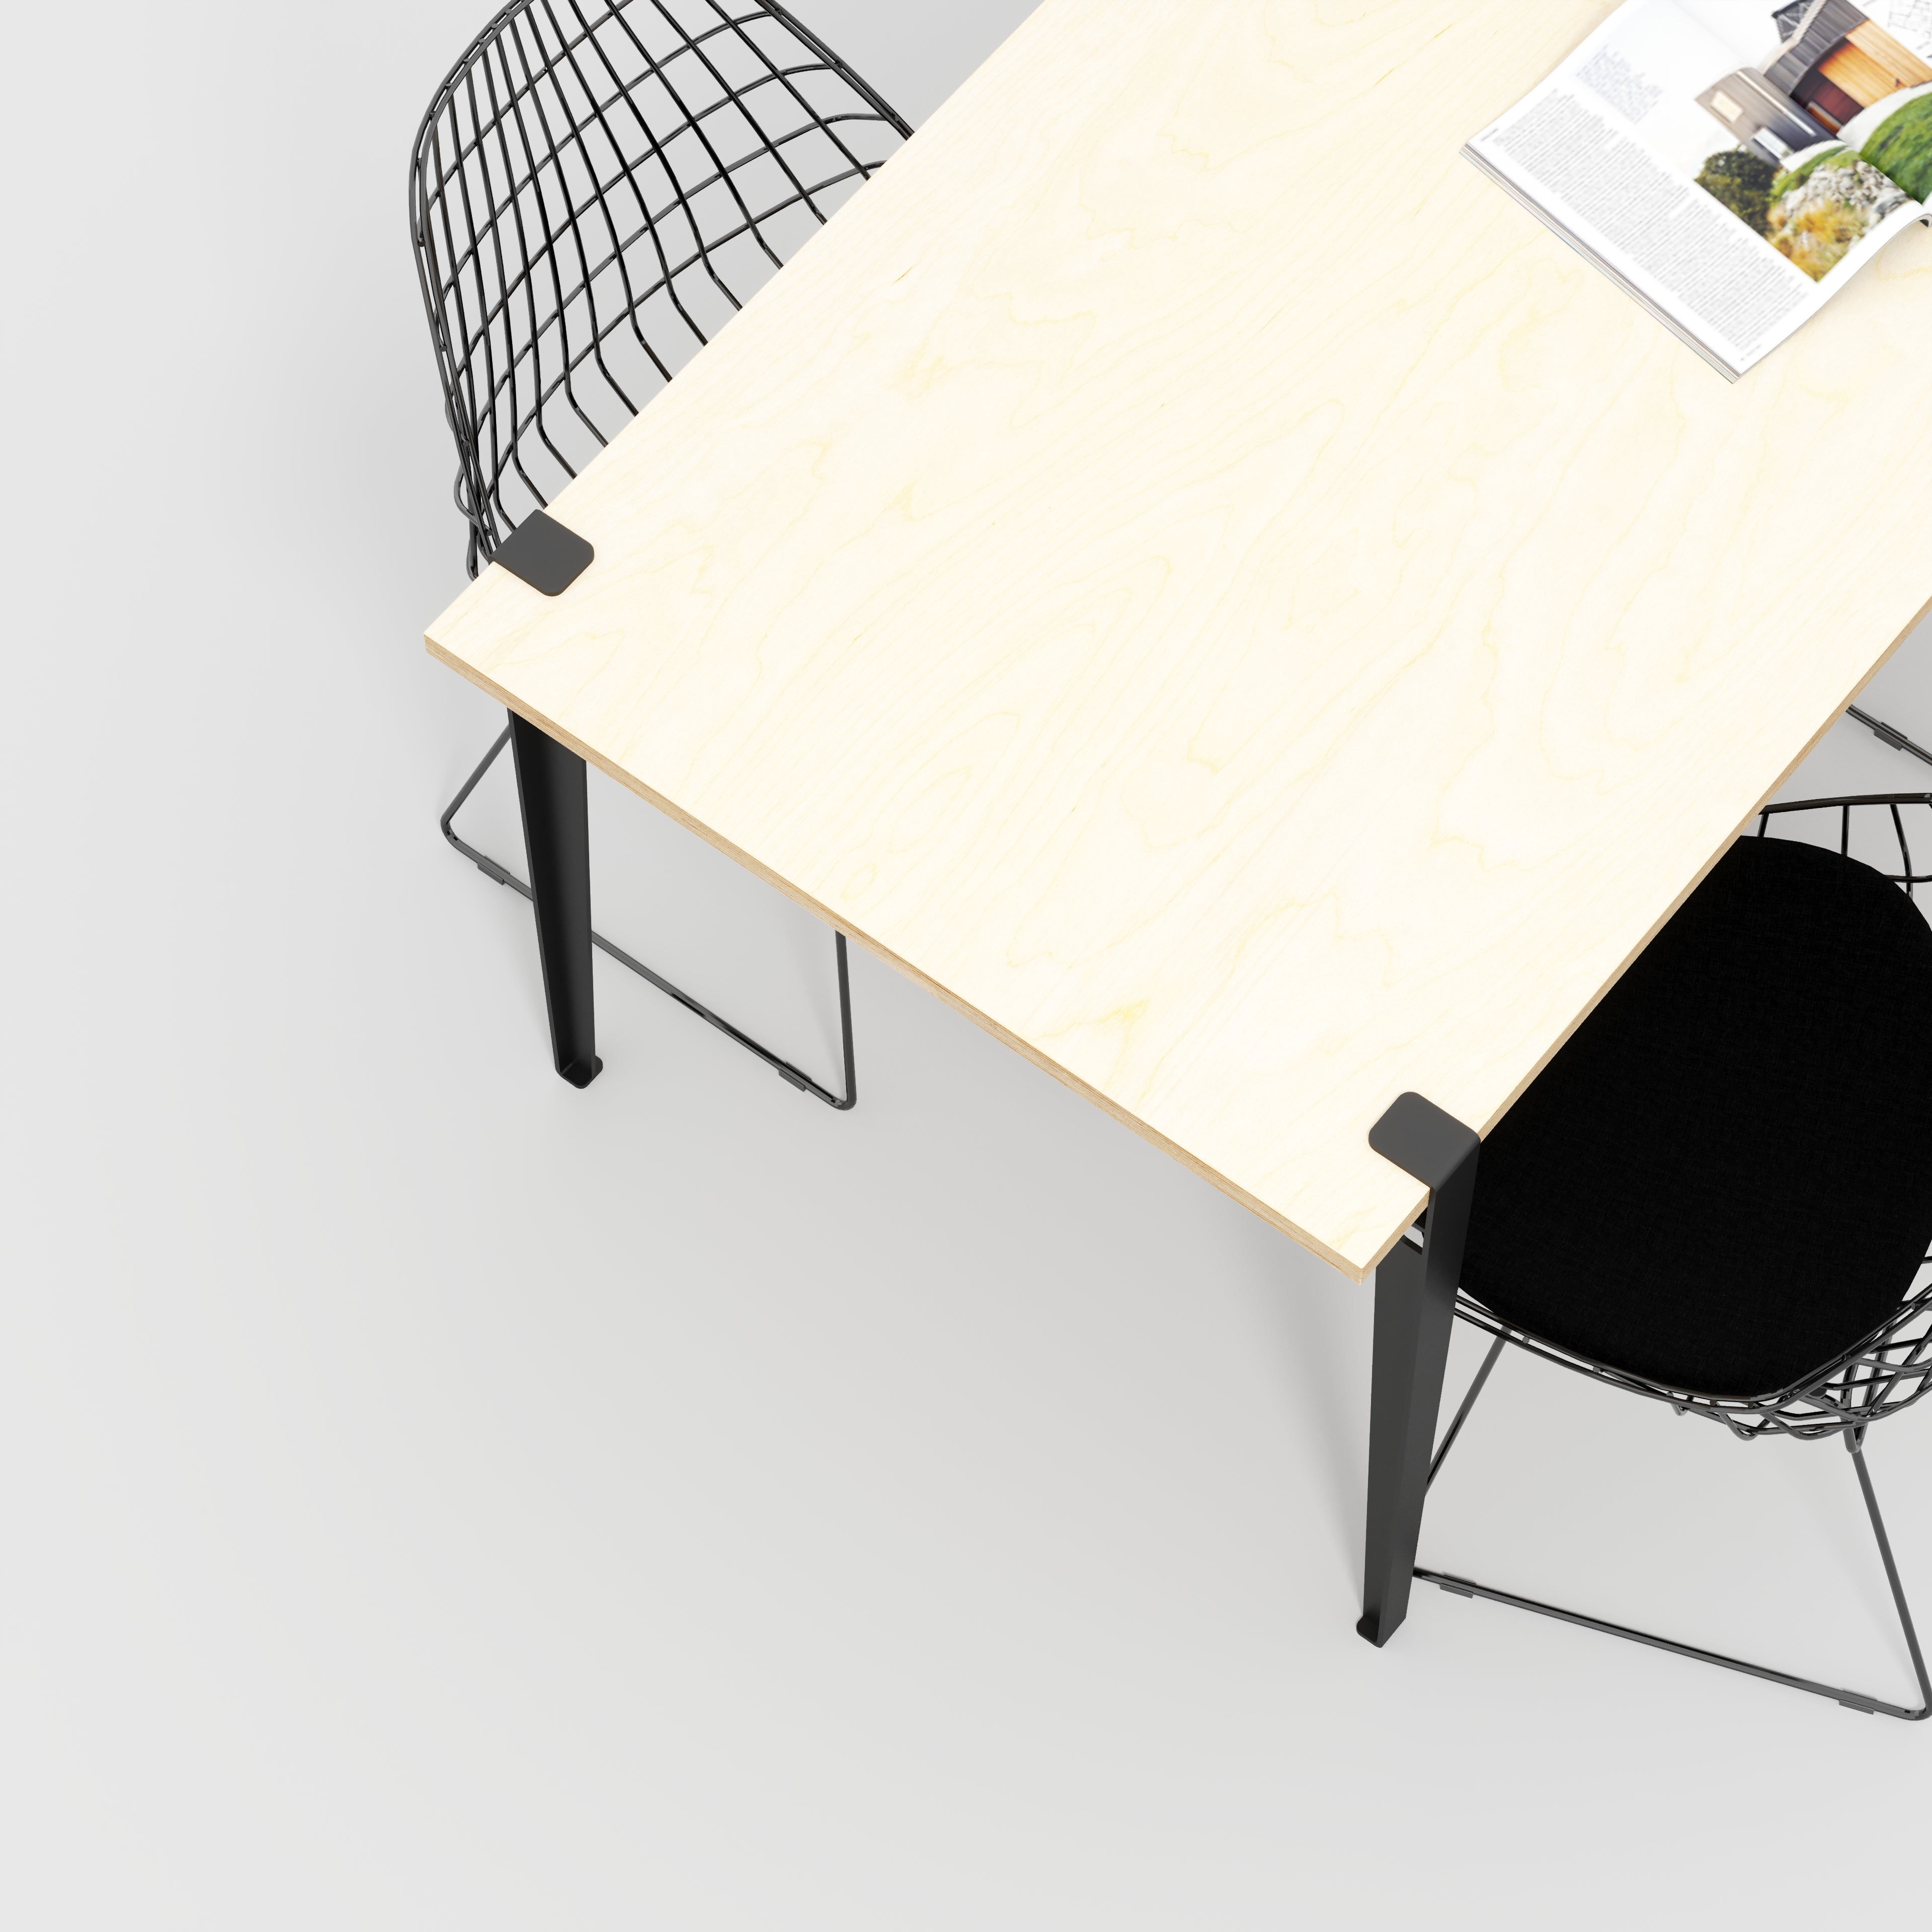 Custom Plywood Table with Tiptoe Legs